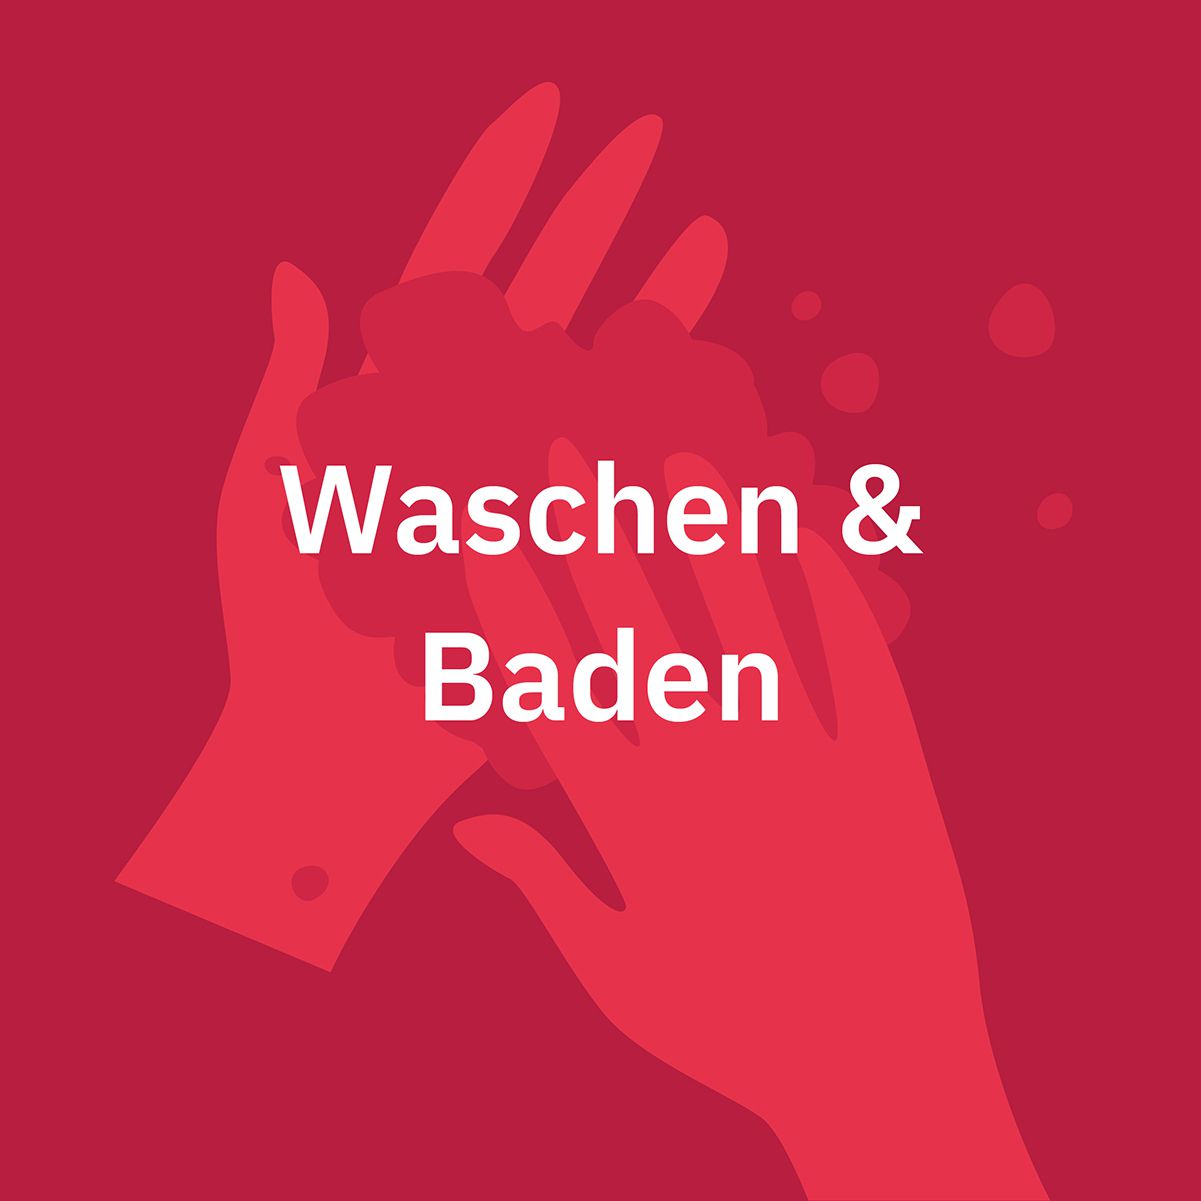 Waschen & Baden